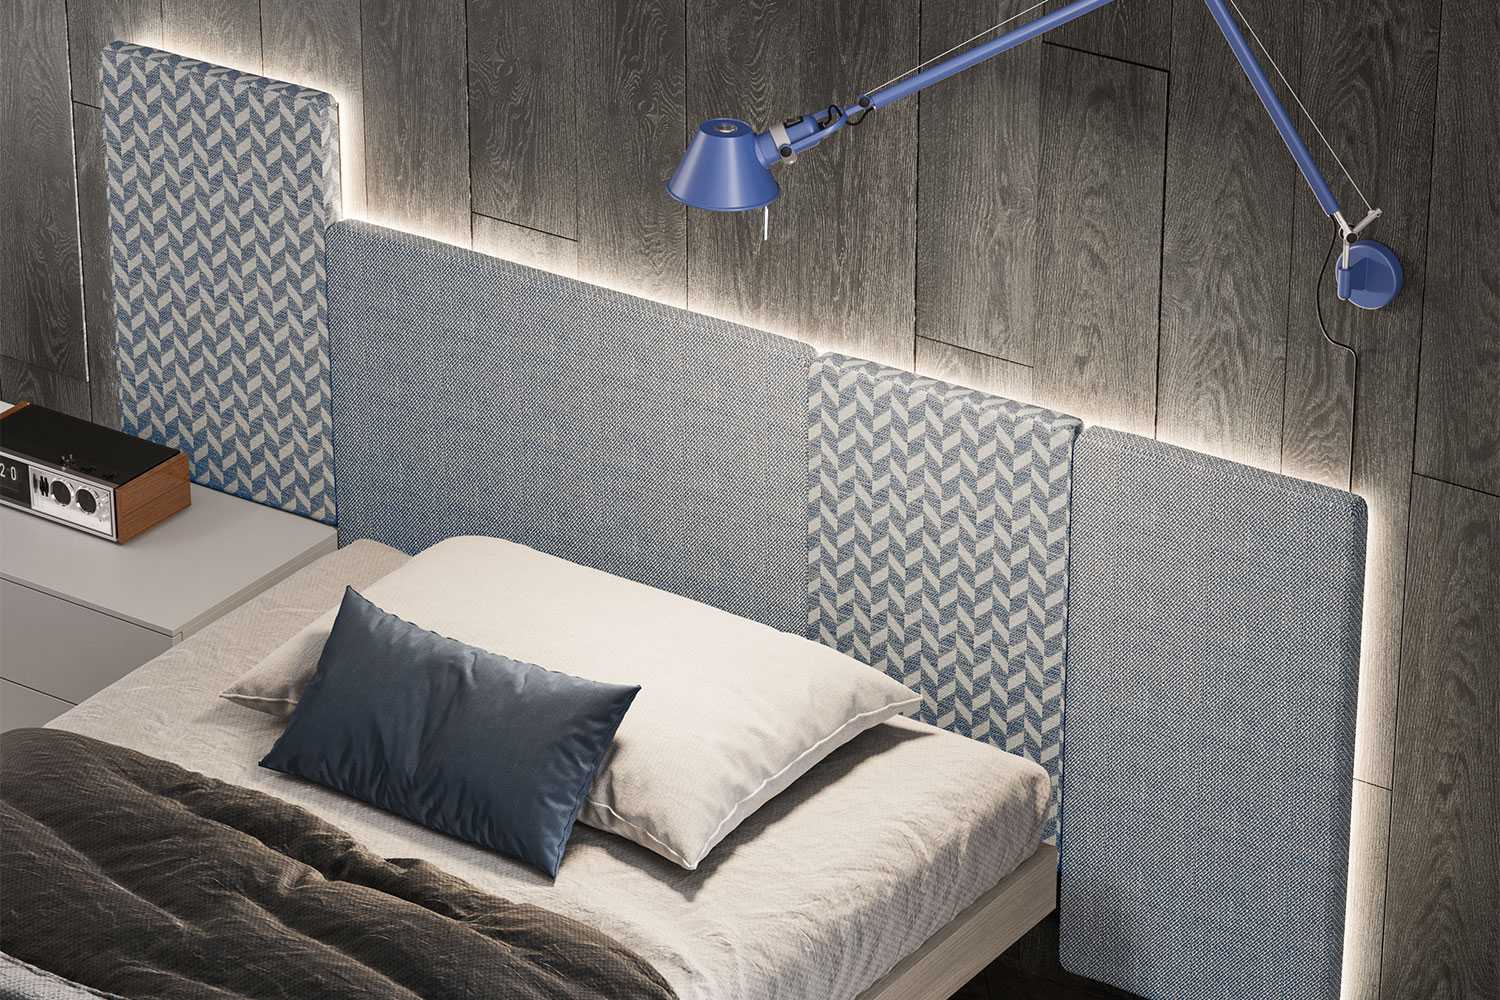 Pannelli modulari per testiera letto Wall - Boiserie perfetti per personalizzare la parete della cameretta